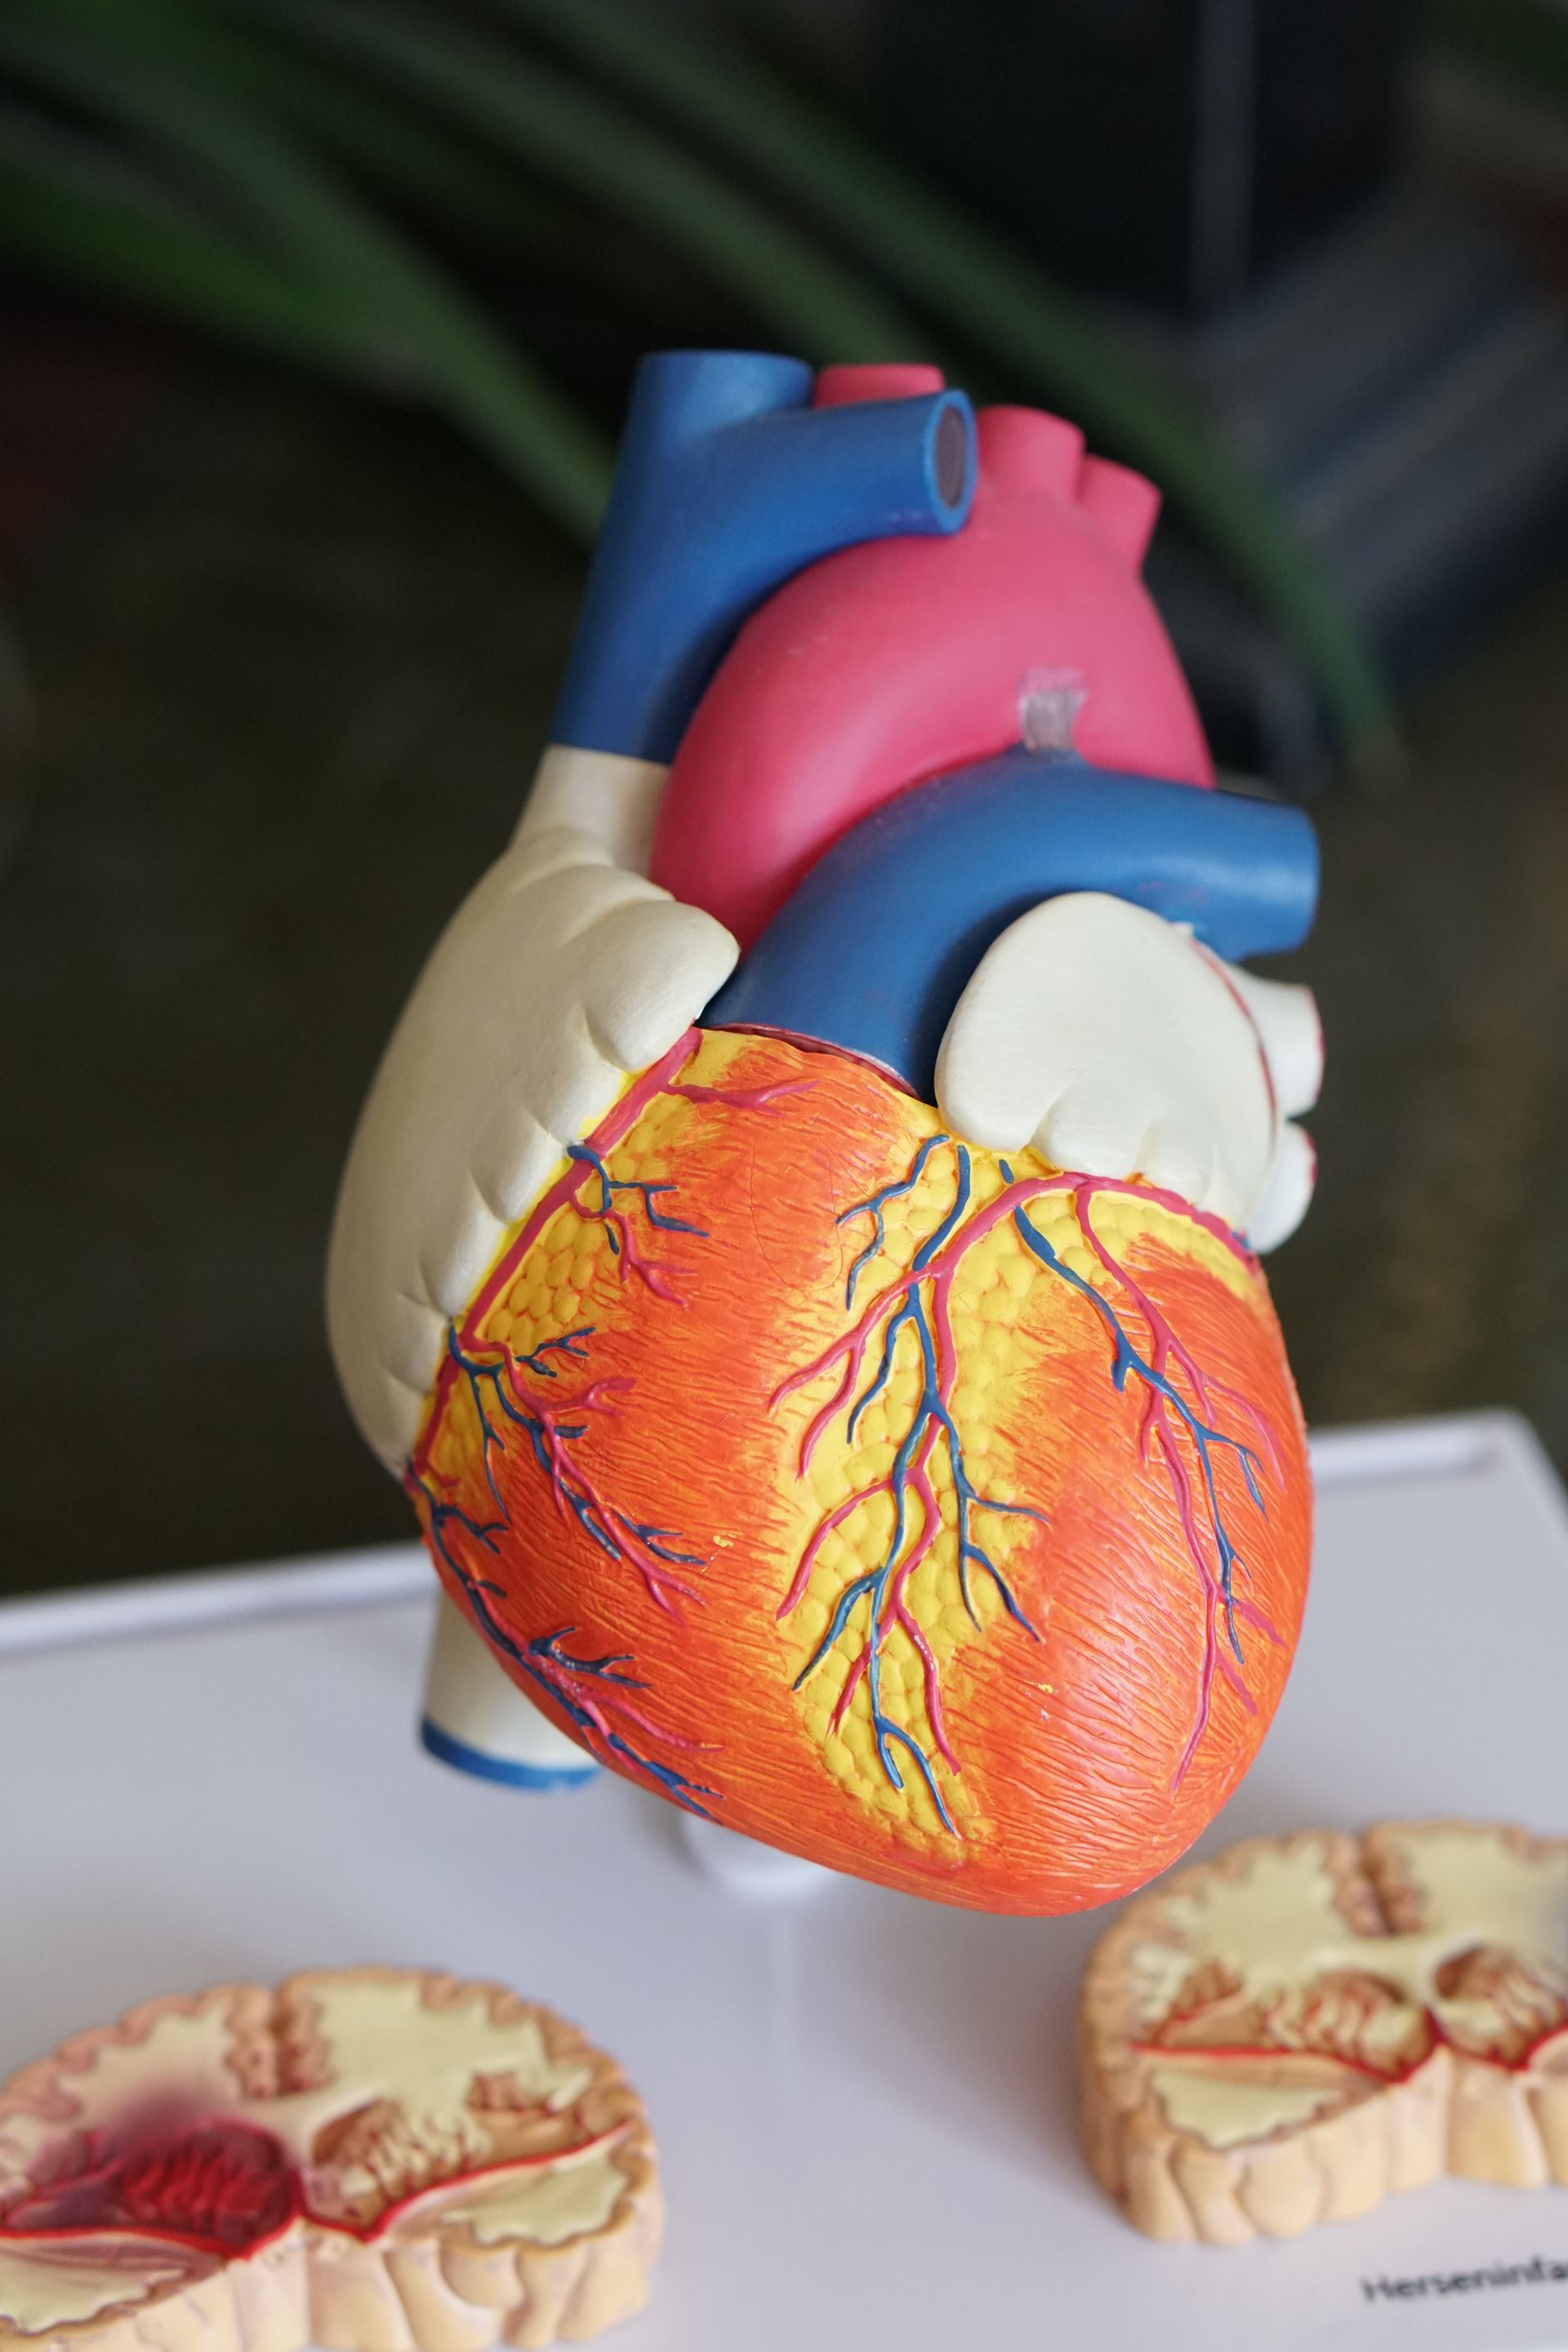 a model of a human organ